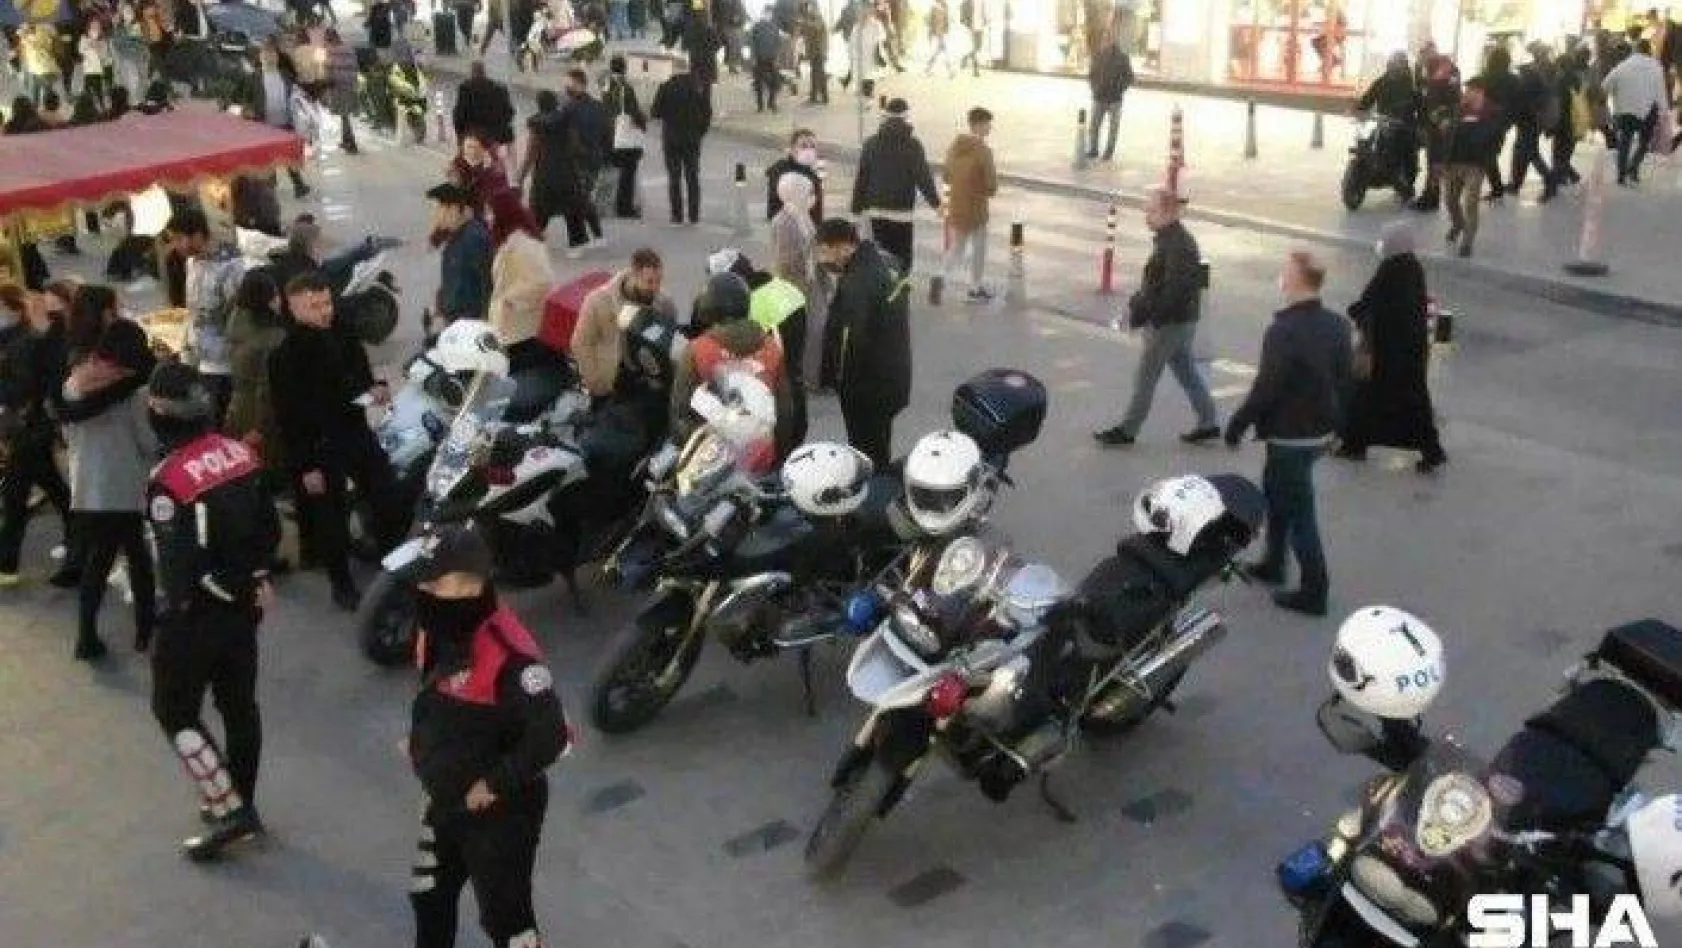 Bakırköy'de motosiklet denetimi